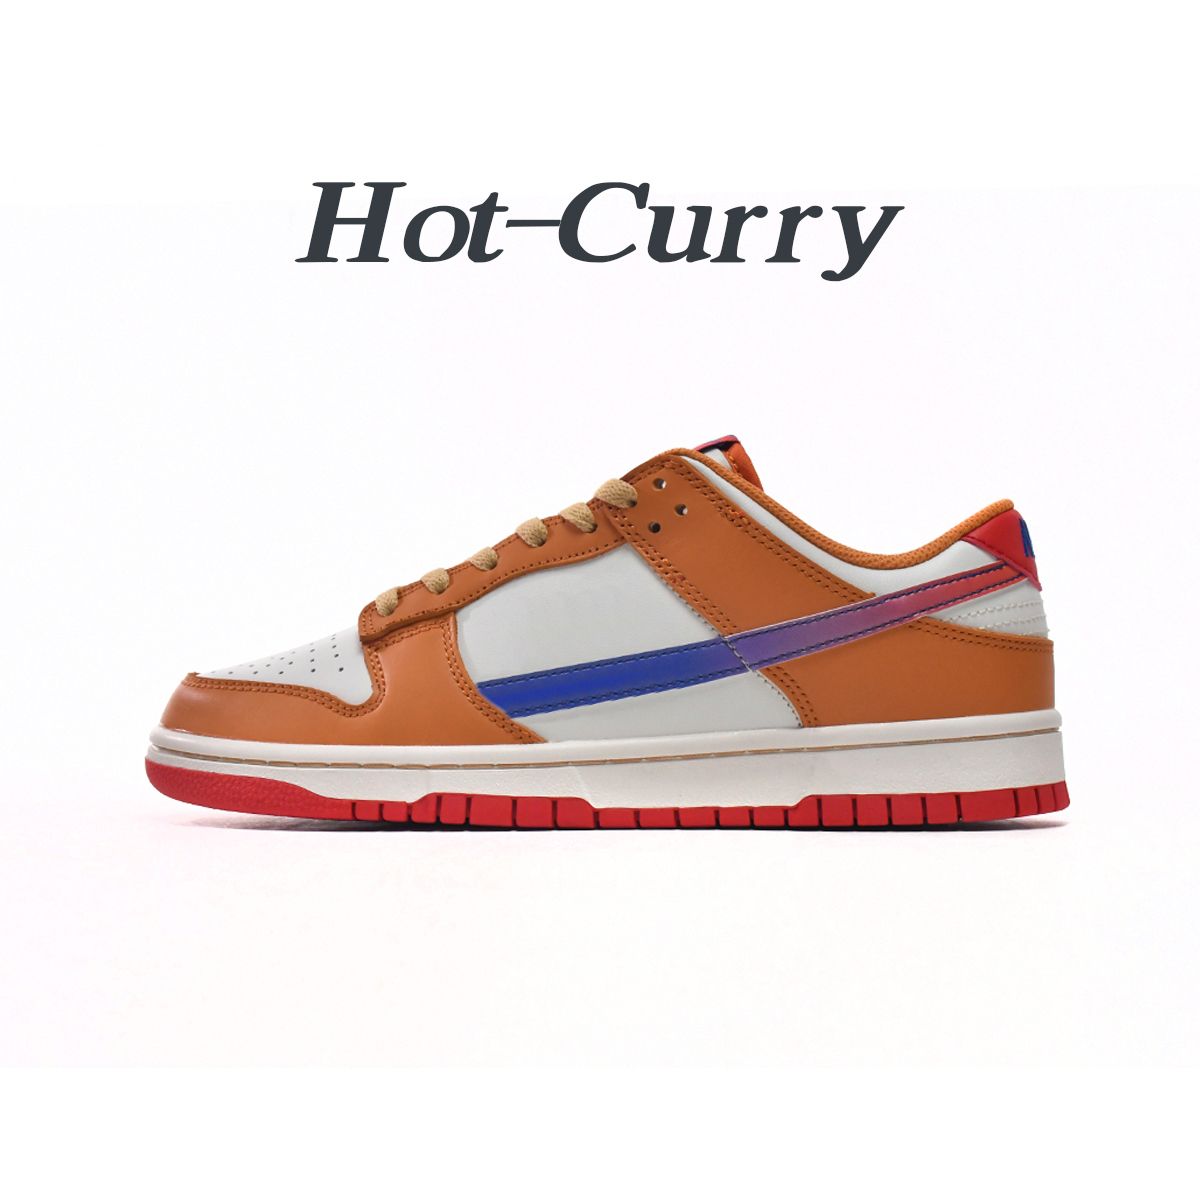 6. Curry caldo